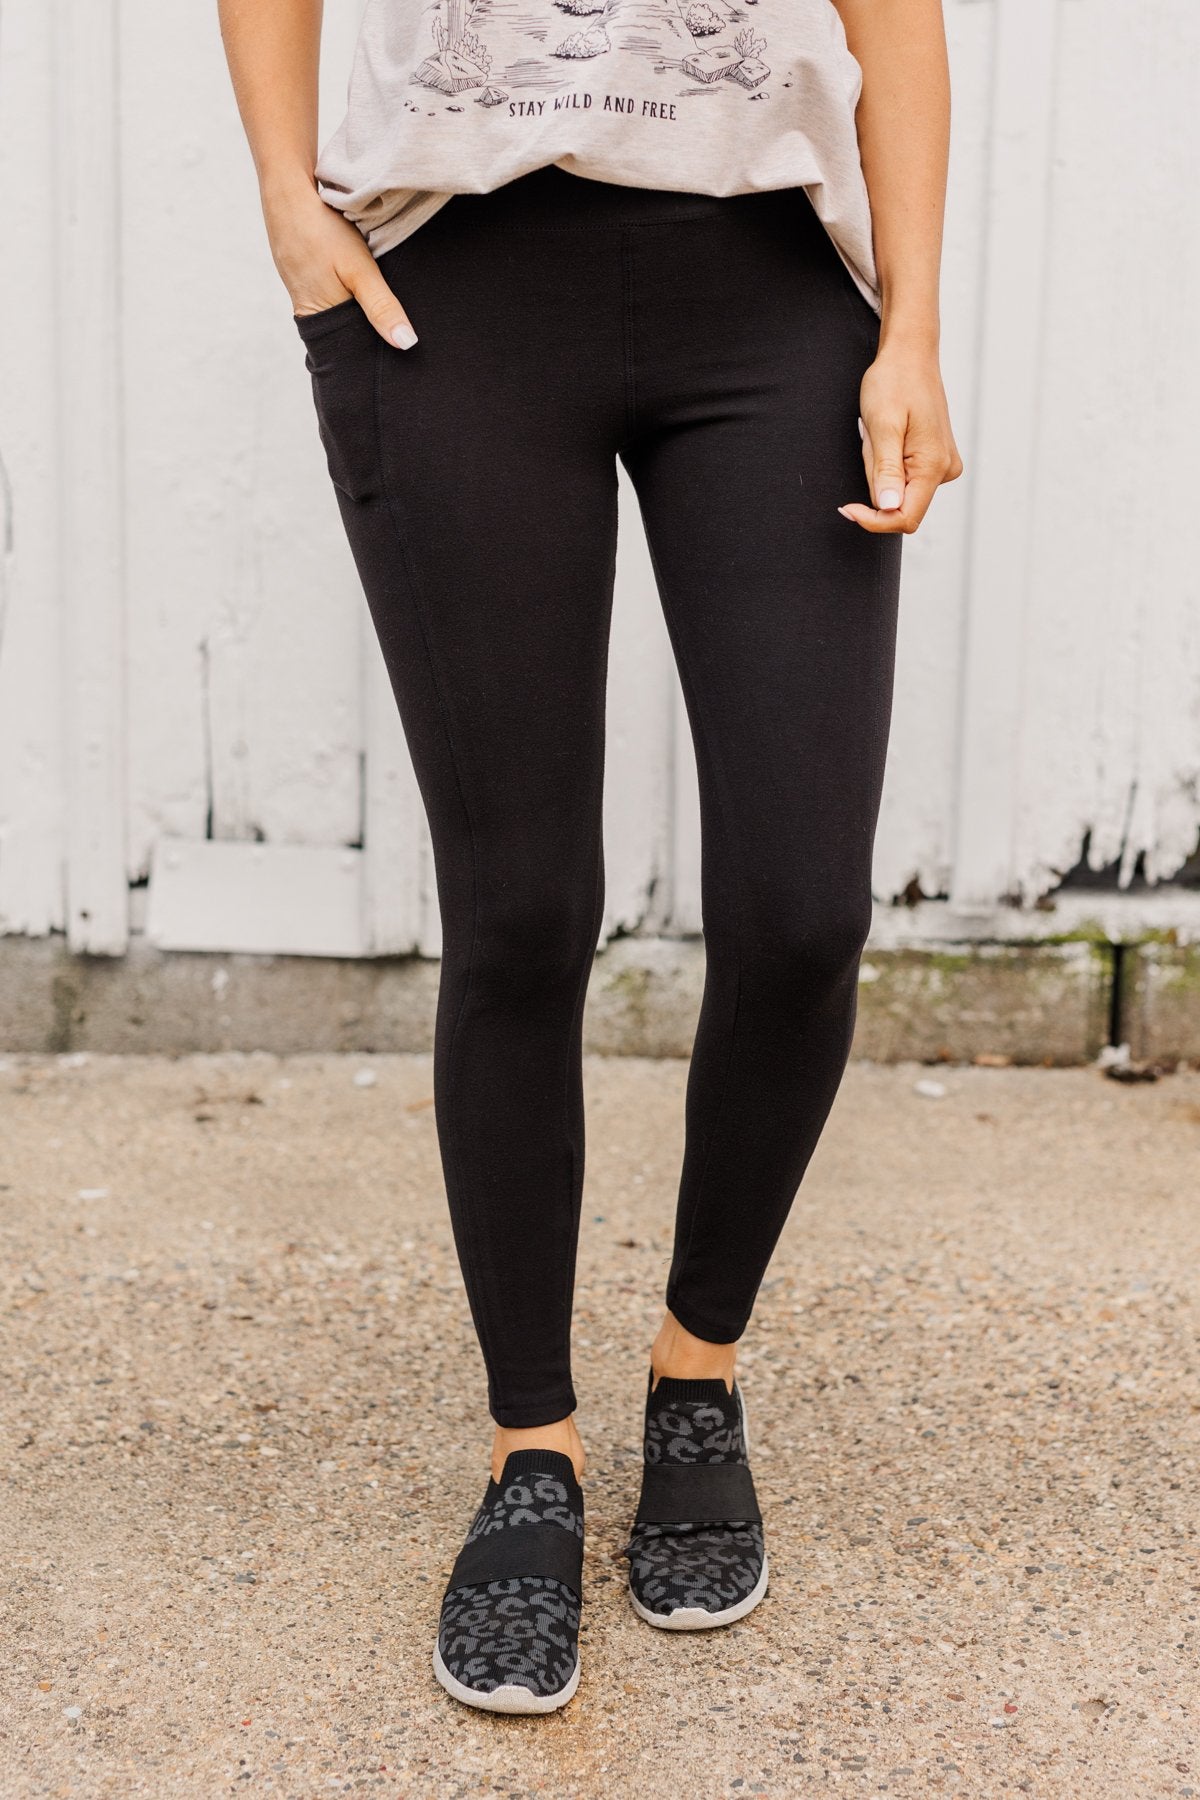 AHLW Winter Warm Fleece Lined Leggings for Women Thermal Tight Leggings  Elastic Soft Comfortable Velvet Pants Black at Amazon Women's Clothing store